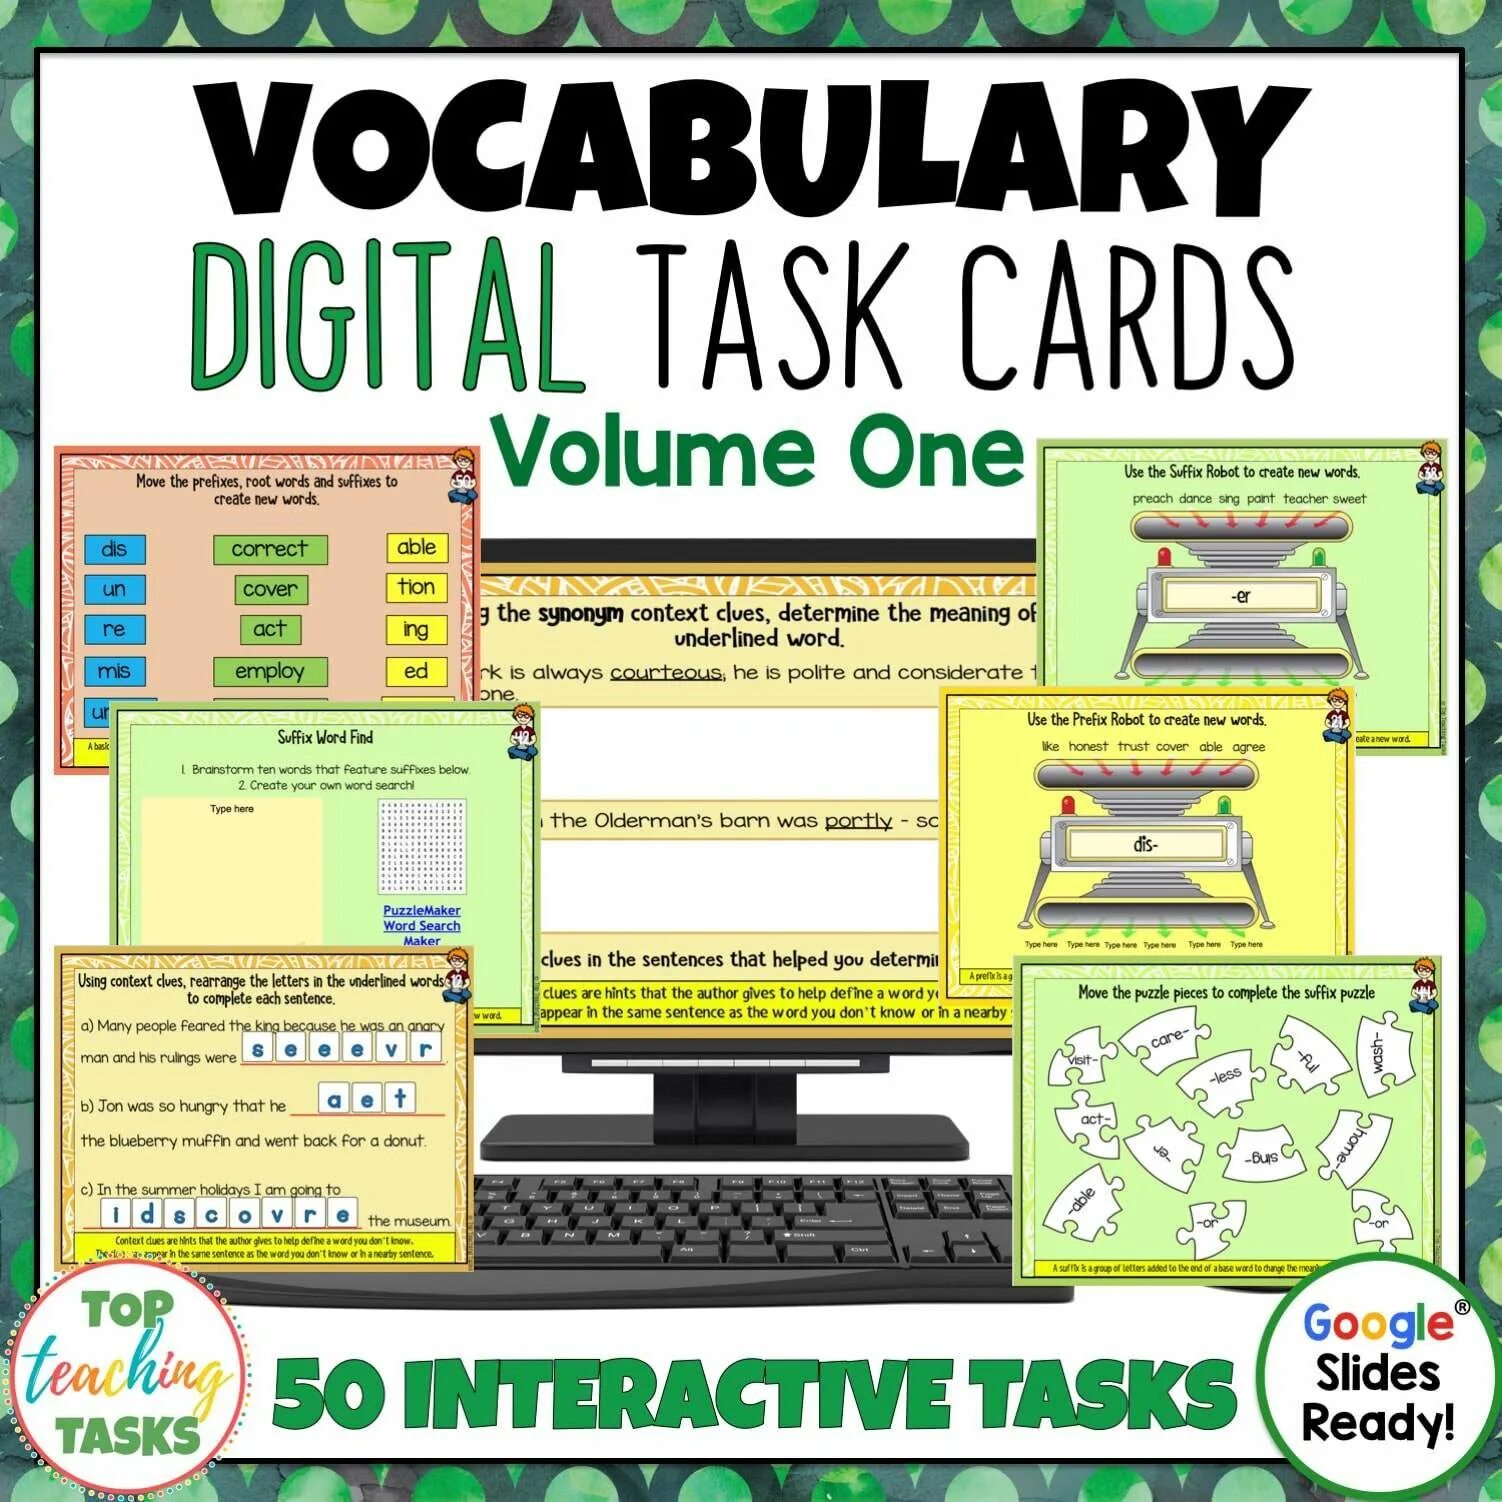 Vocabulary задания. Vocabulary tasks. Designing Vocabulary tasks. Teaching Vocabulary activities. Teacher vocabulary